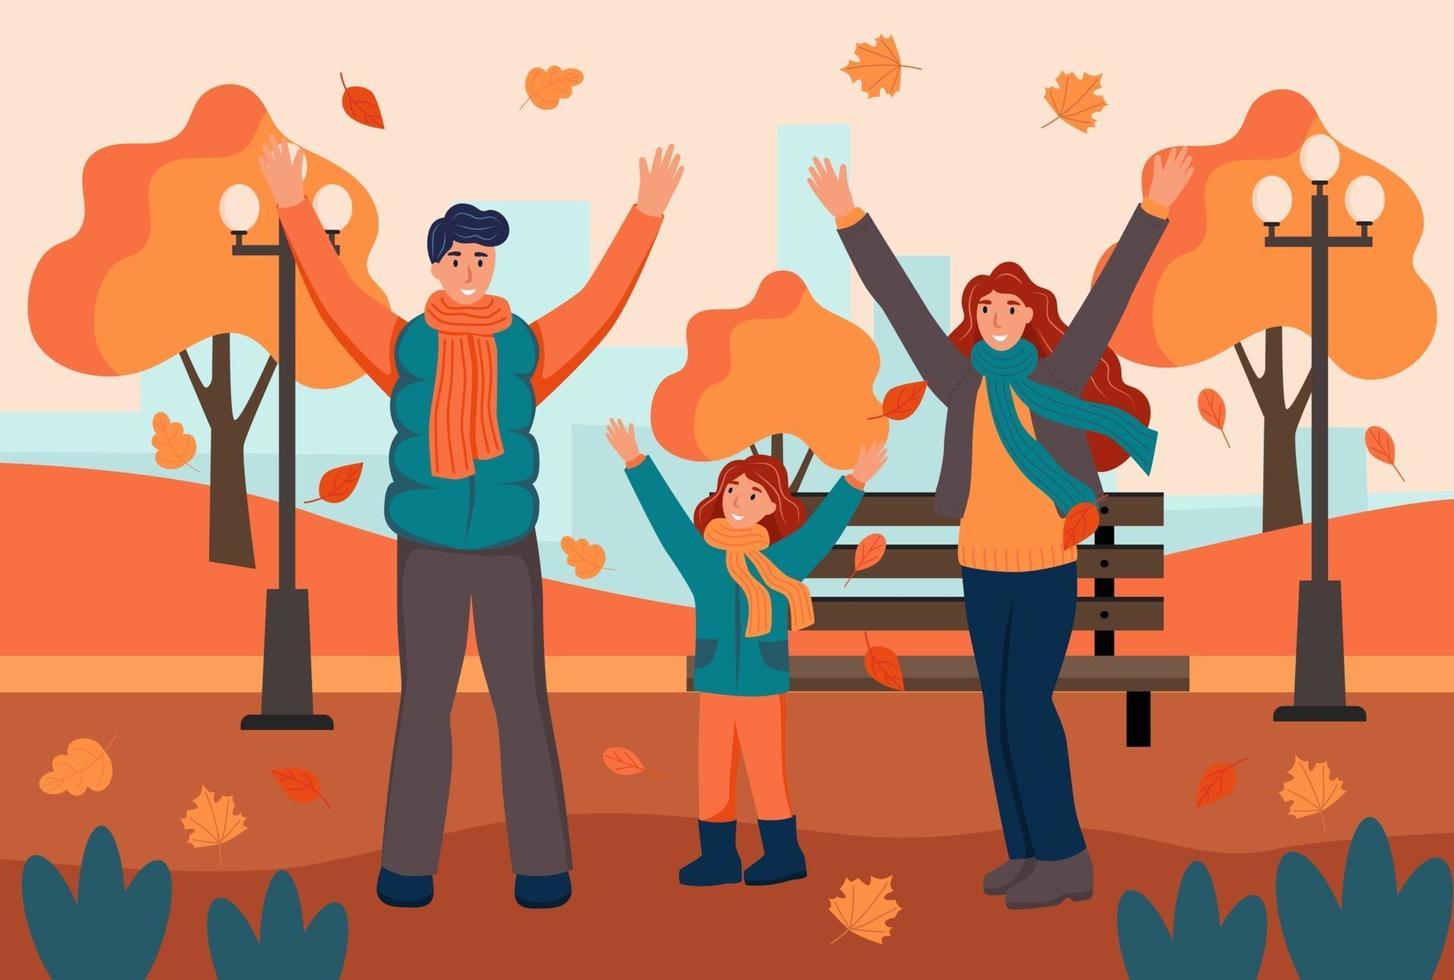 família caminha no parque outono. pai, mãe e filha se divertem e jogam folhas. ilustração em vetor plana dos desenhos animados.